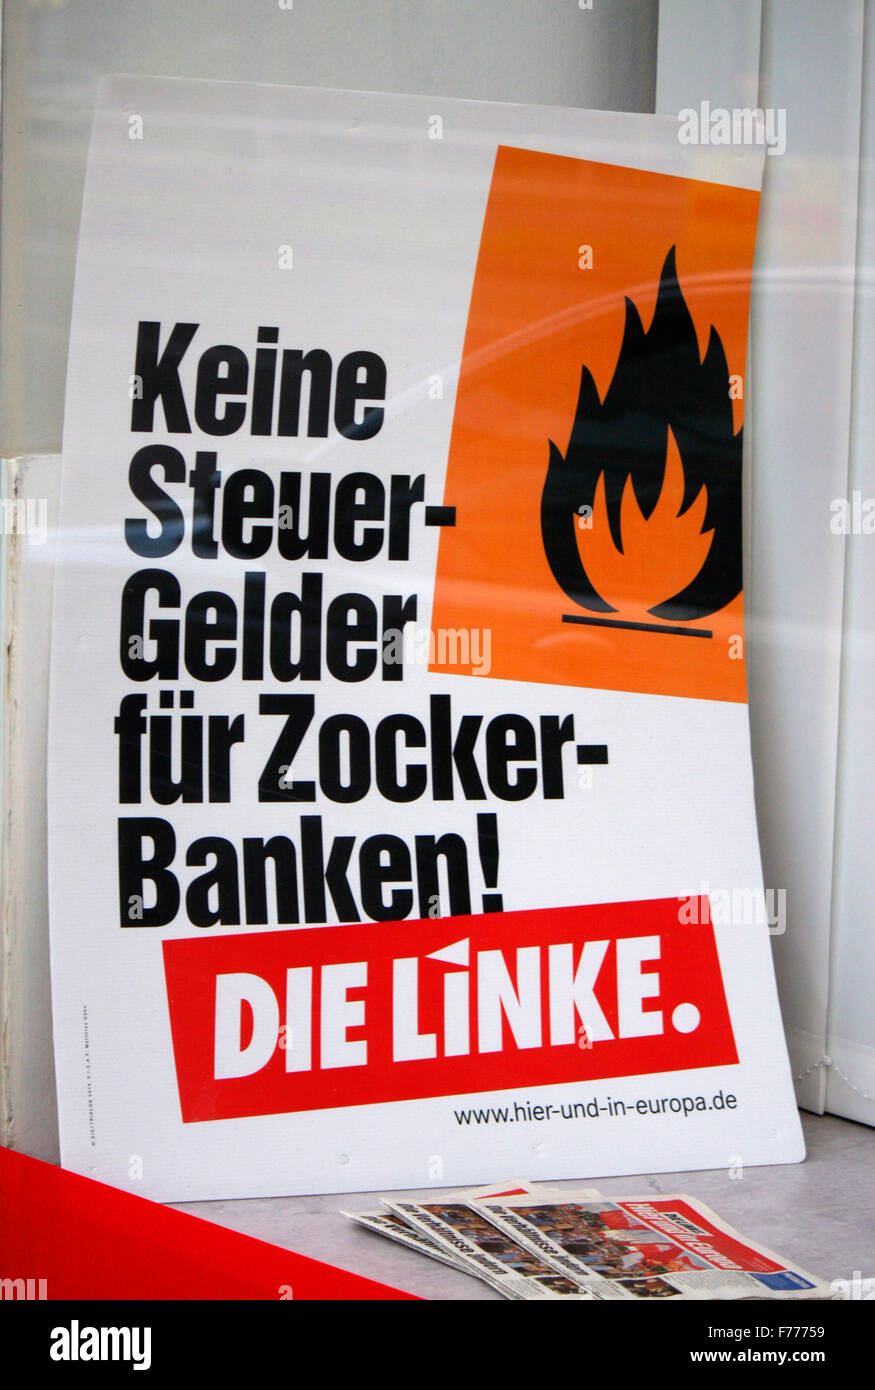 'Keine Steuergelder fuer Zockerbanken', die Linke - Wahlplakate zur anstehenden Europawahl, Berlin. Stock Photo